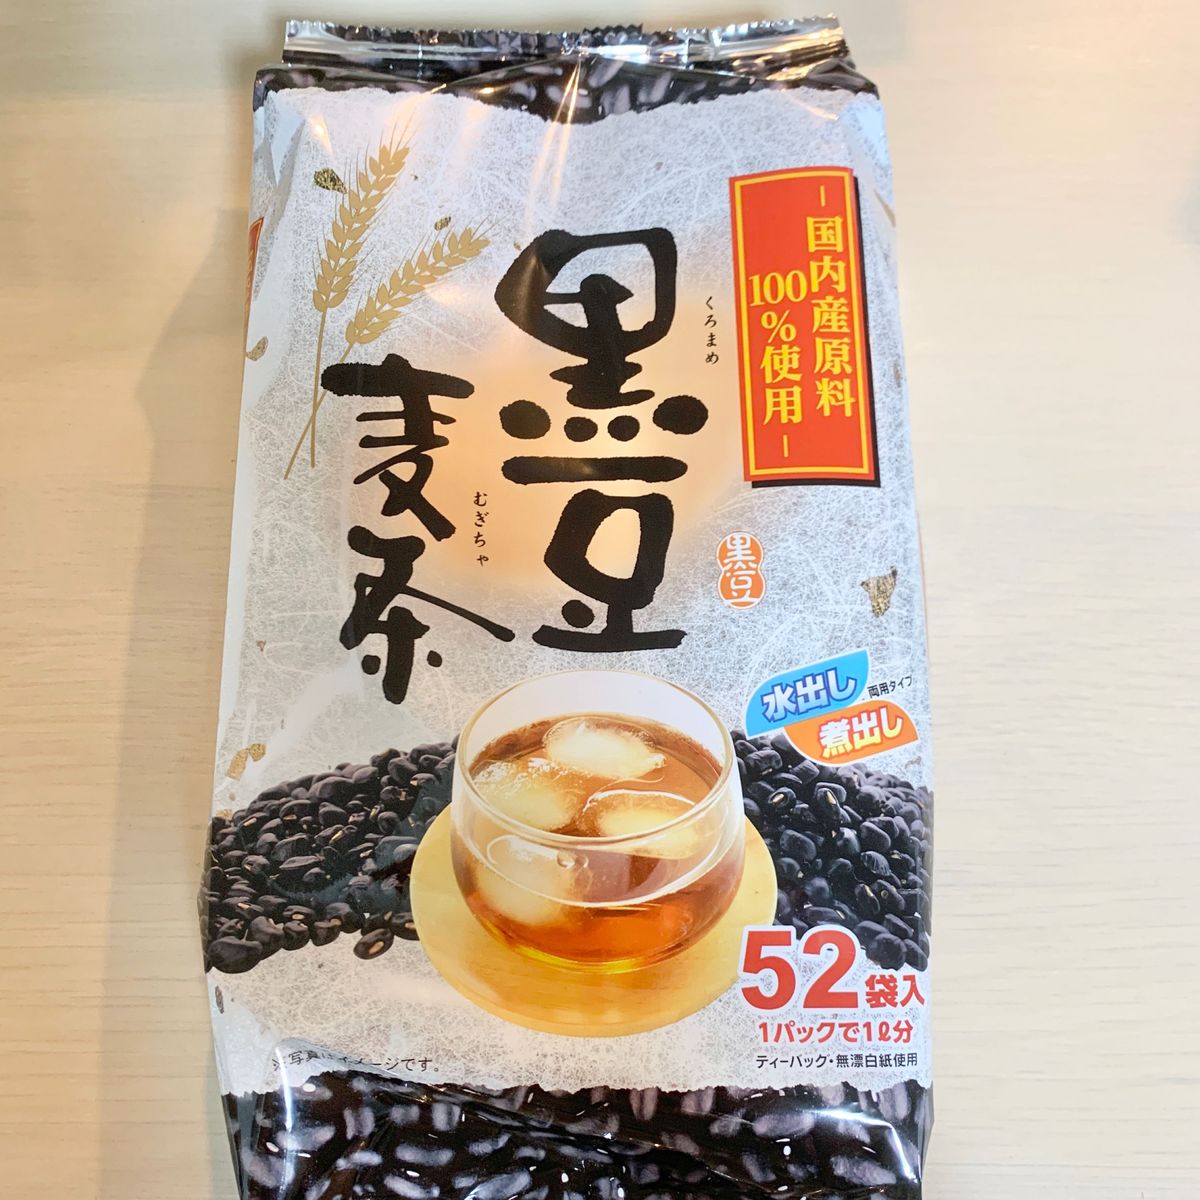 ◆52パック入り◆黒豆麦茶 